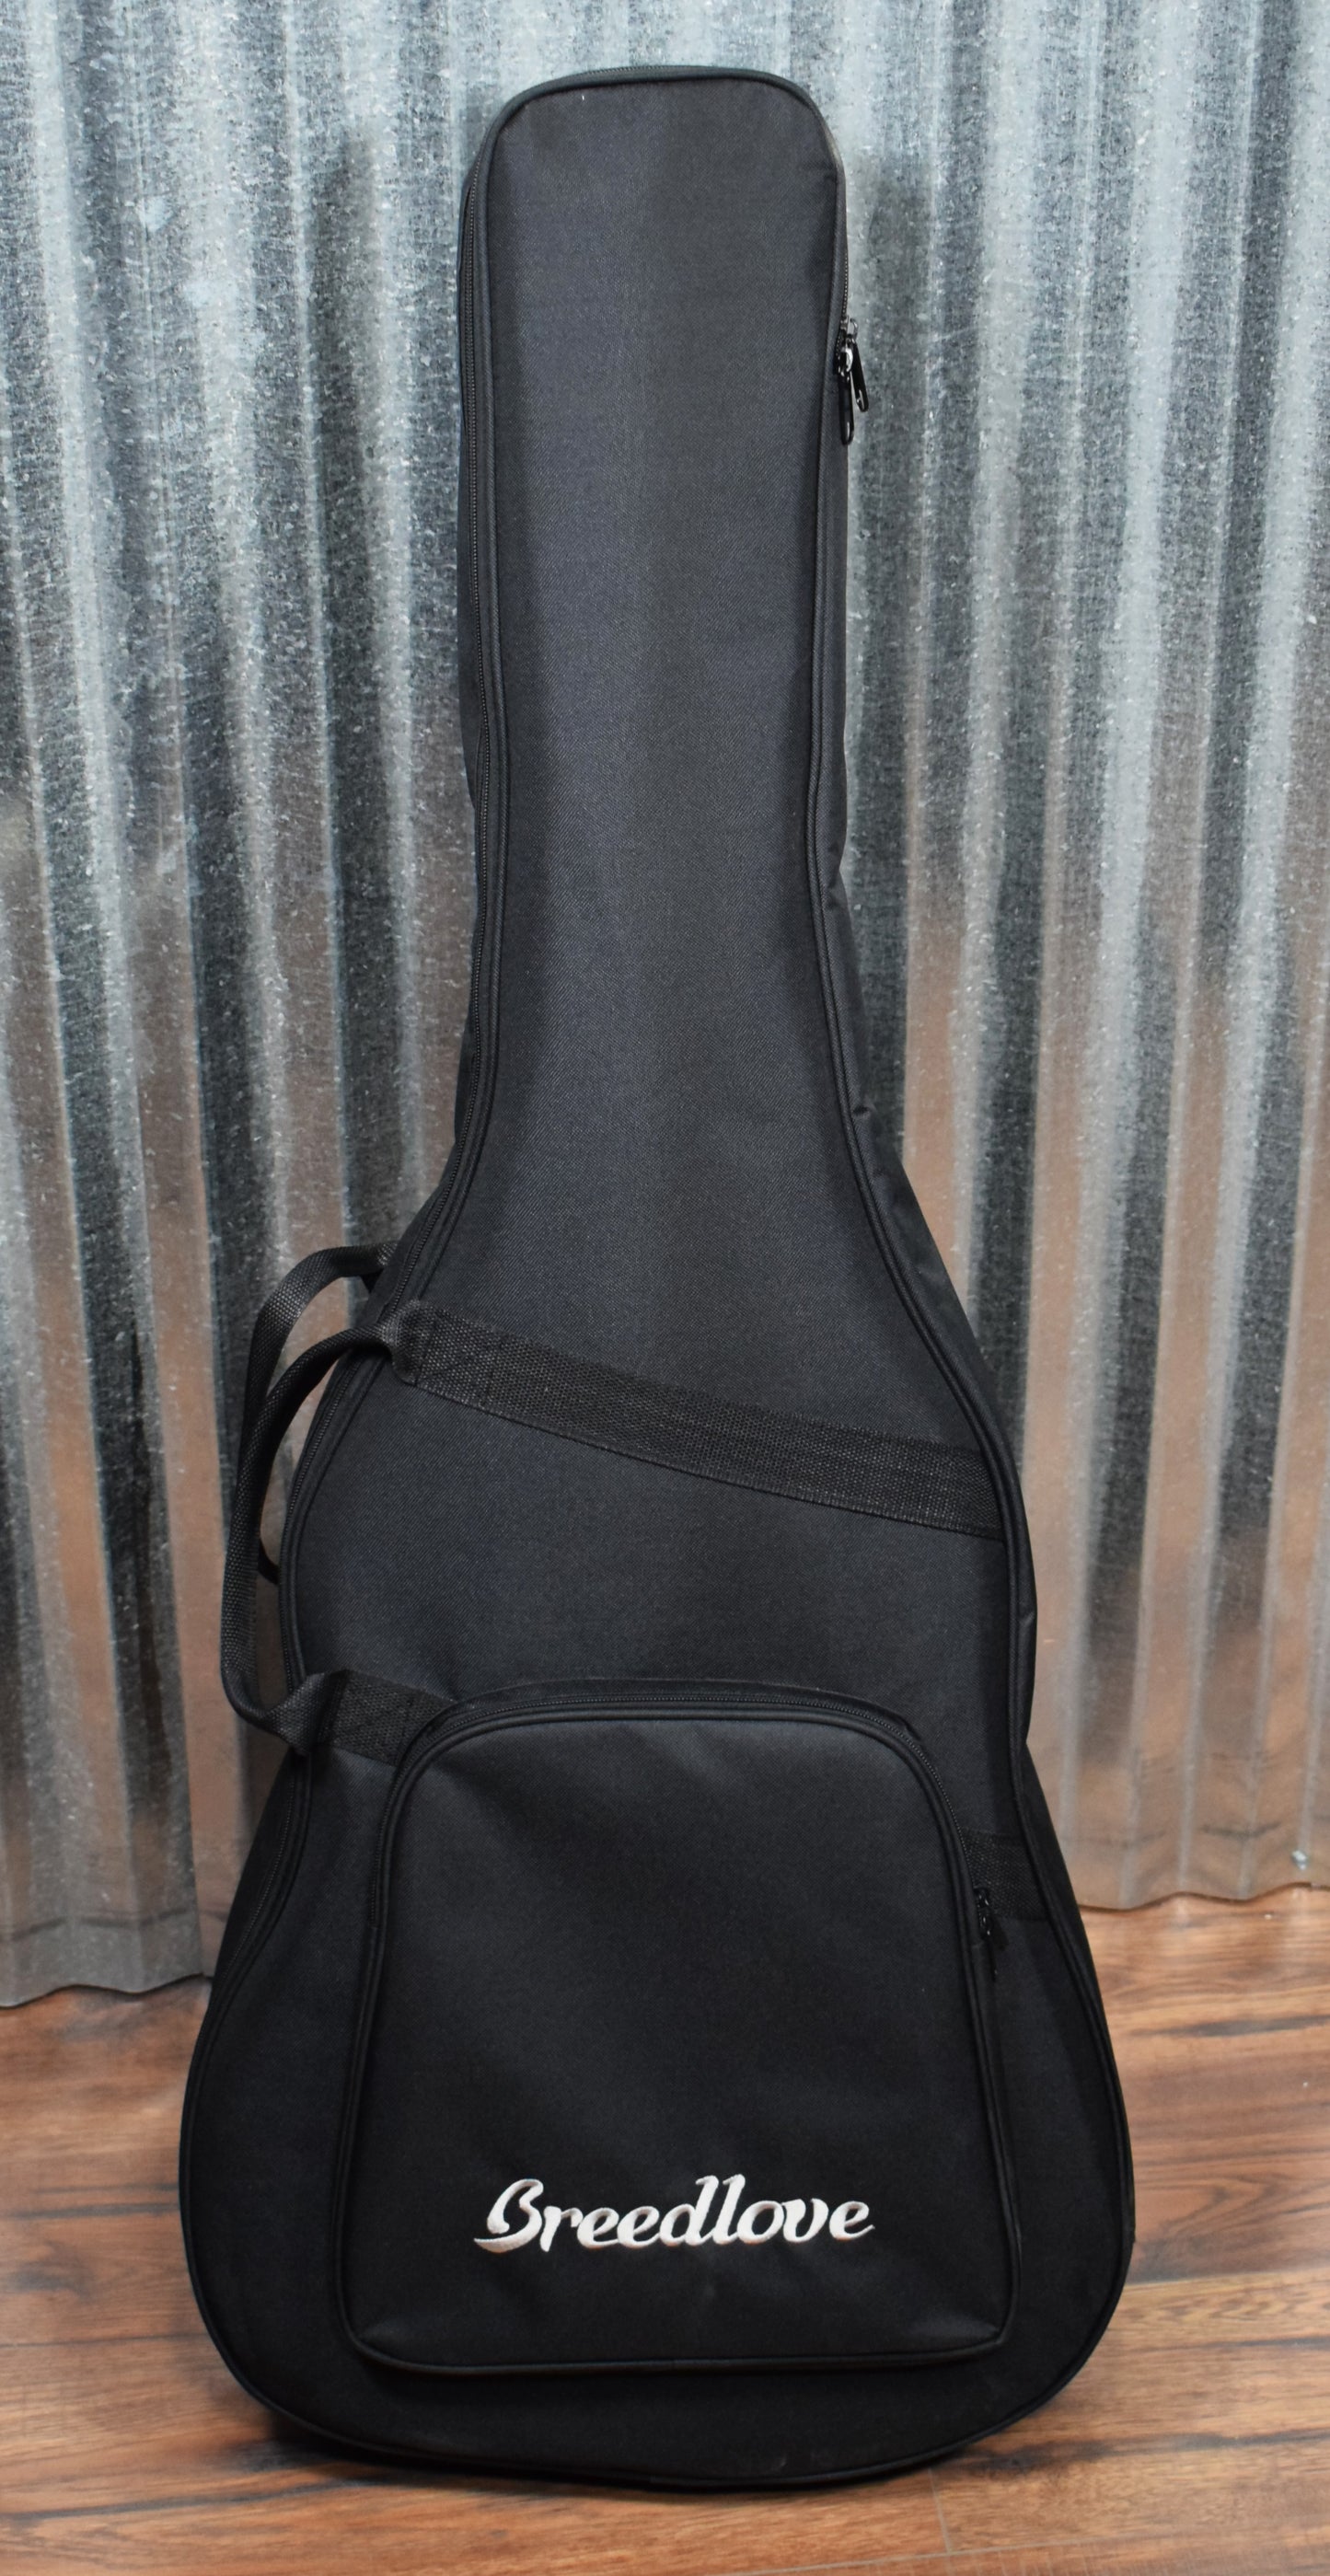 Breedlove Pursuit Exotic Concert CE Sitka Ziricote Acoustic Electric Guitar & Bag #5030